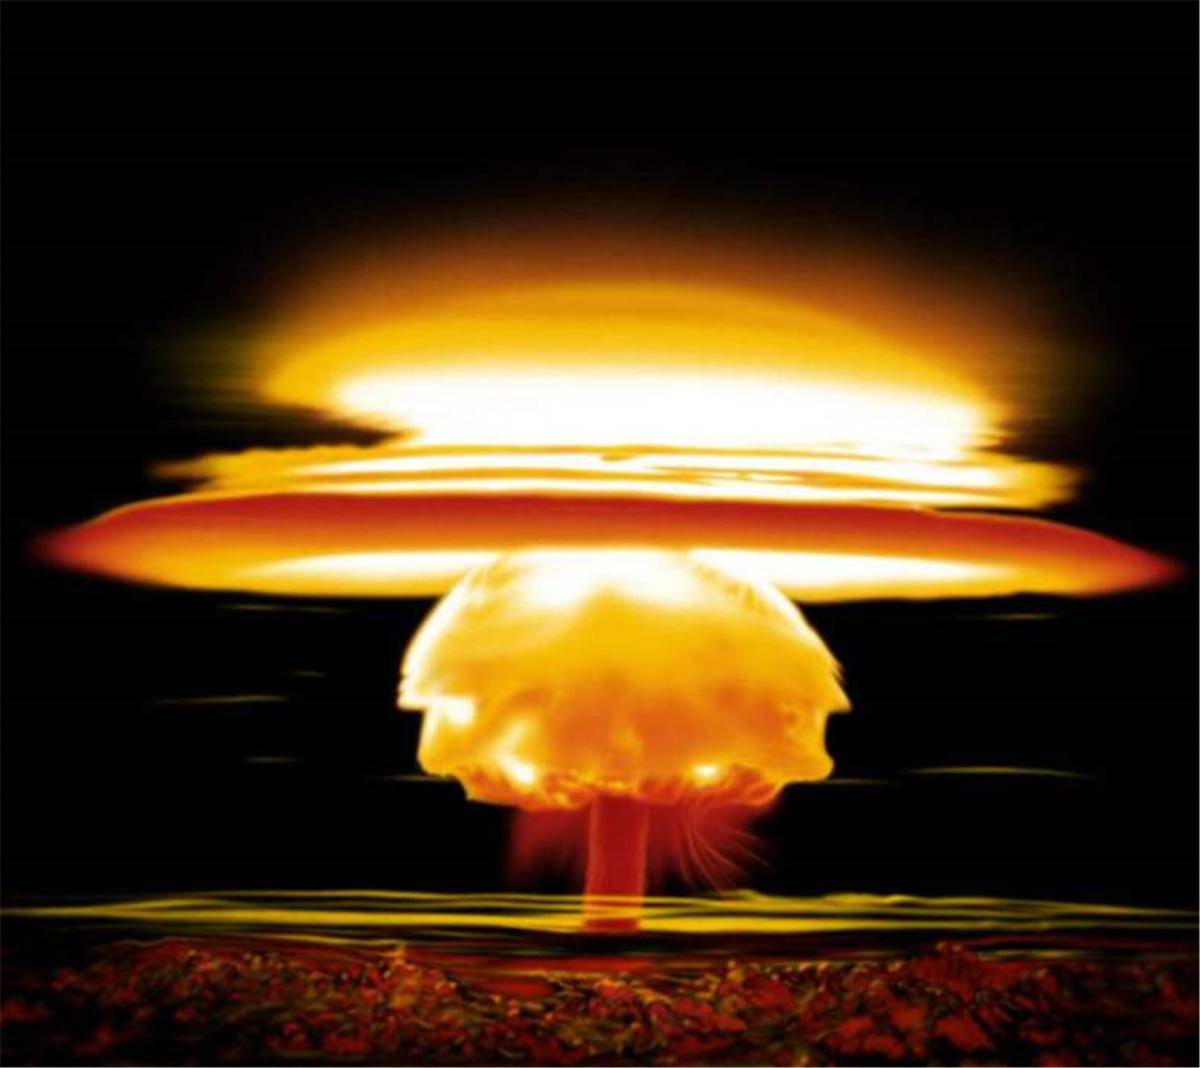 氢弹中包含一颗小型原子弹,爆炸时原子弹先爆产生高温使氘氚发生聚变